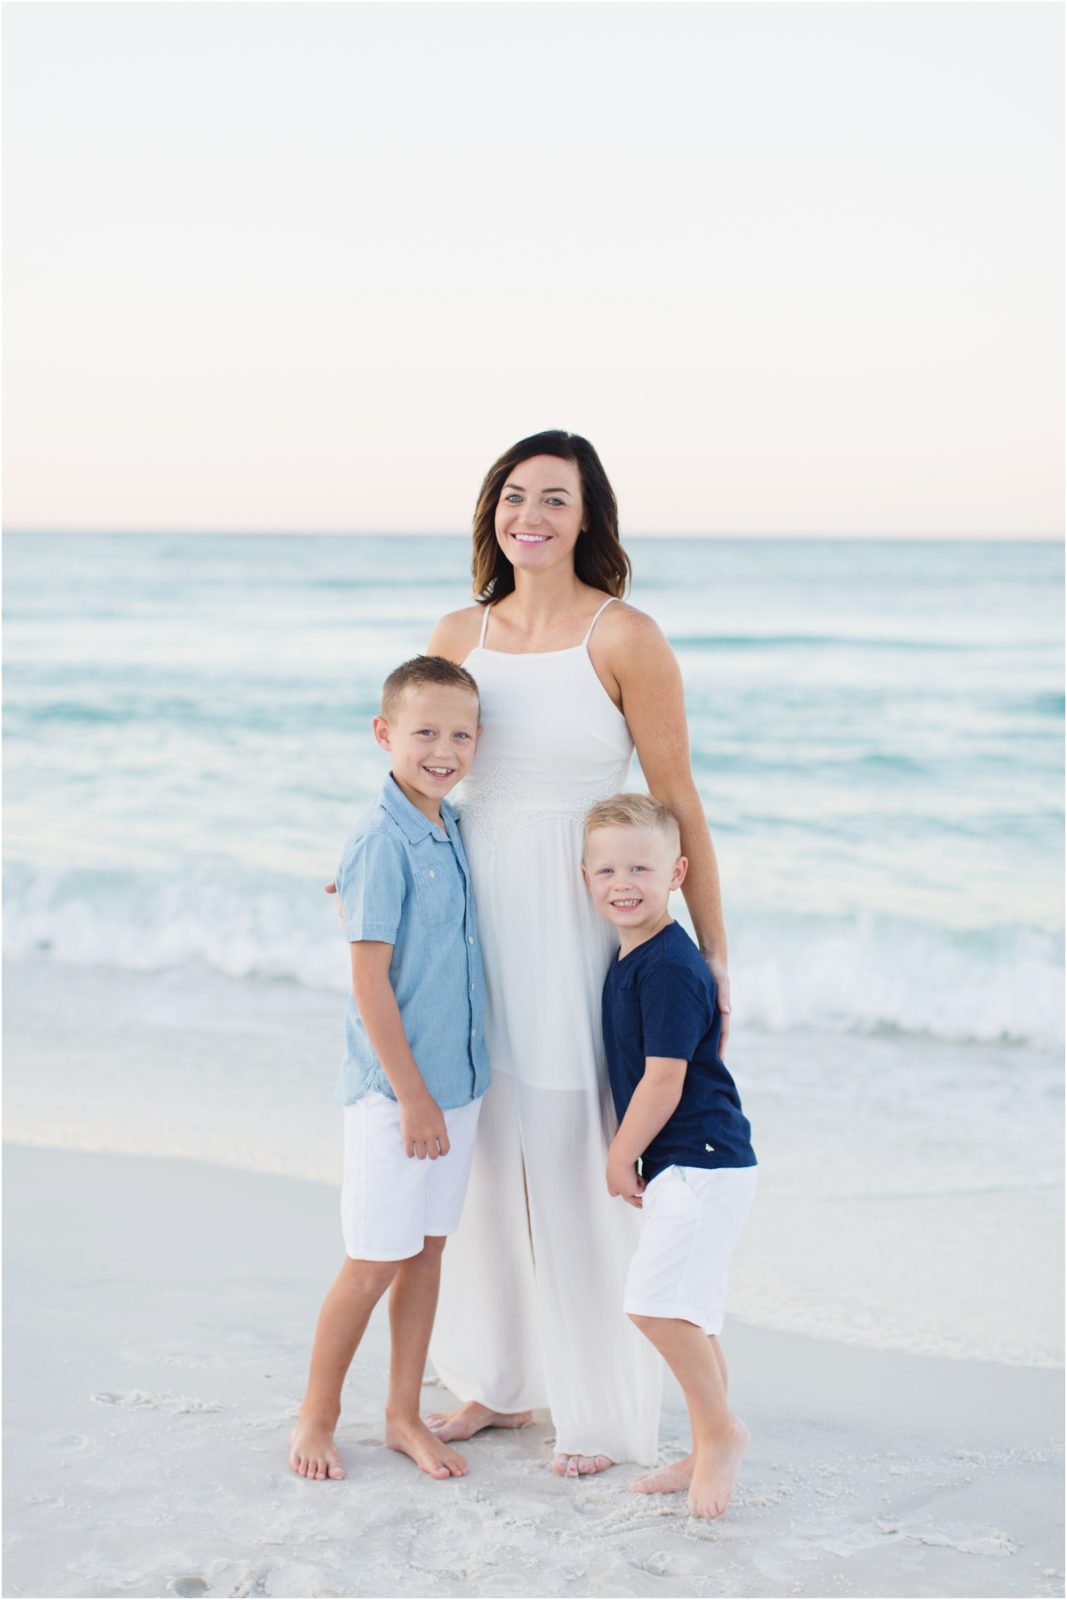 Jahnsen Family || Santa Rosa Beach Photographer | amyrileyphotography.com